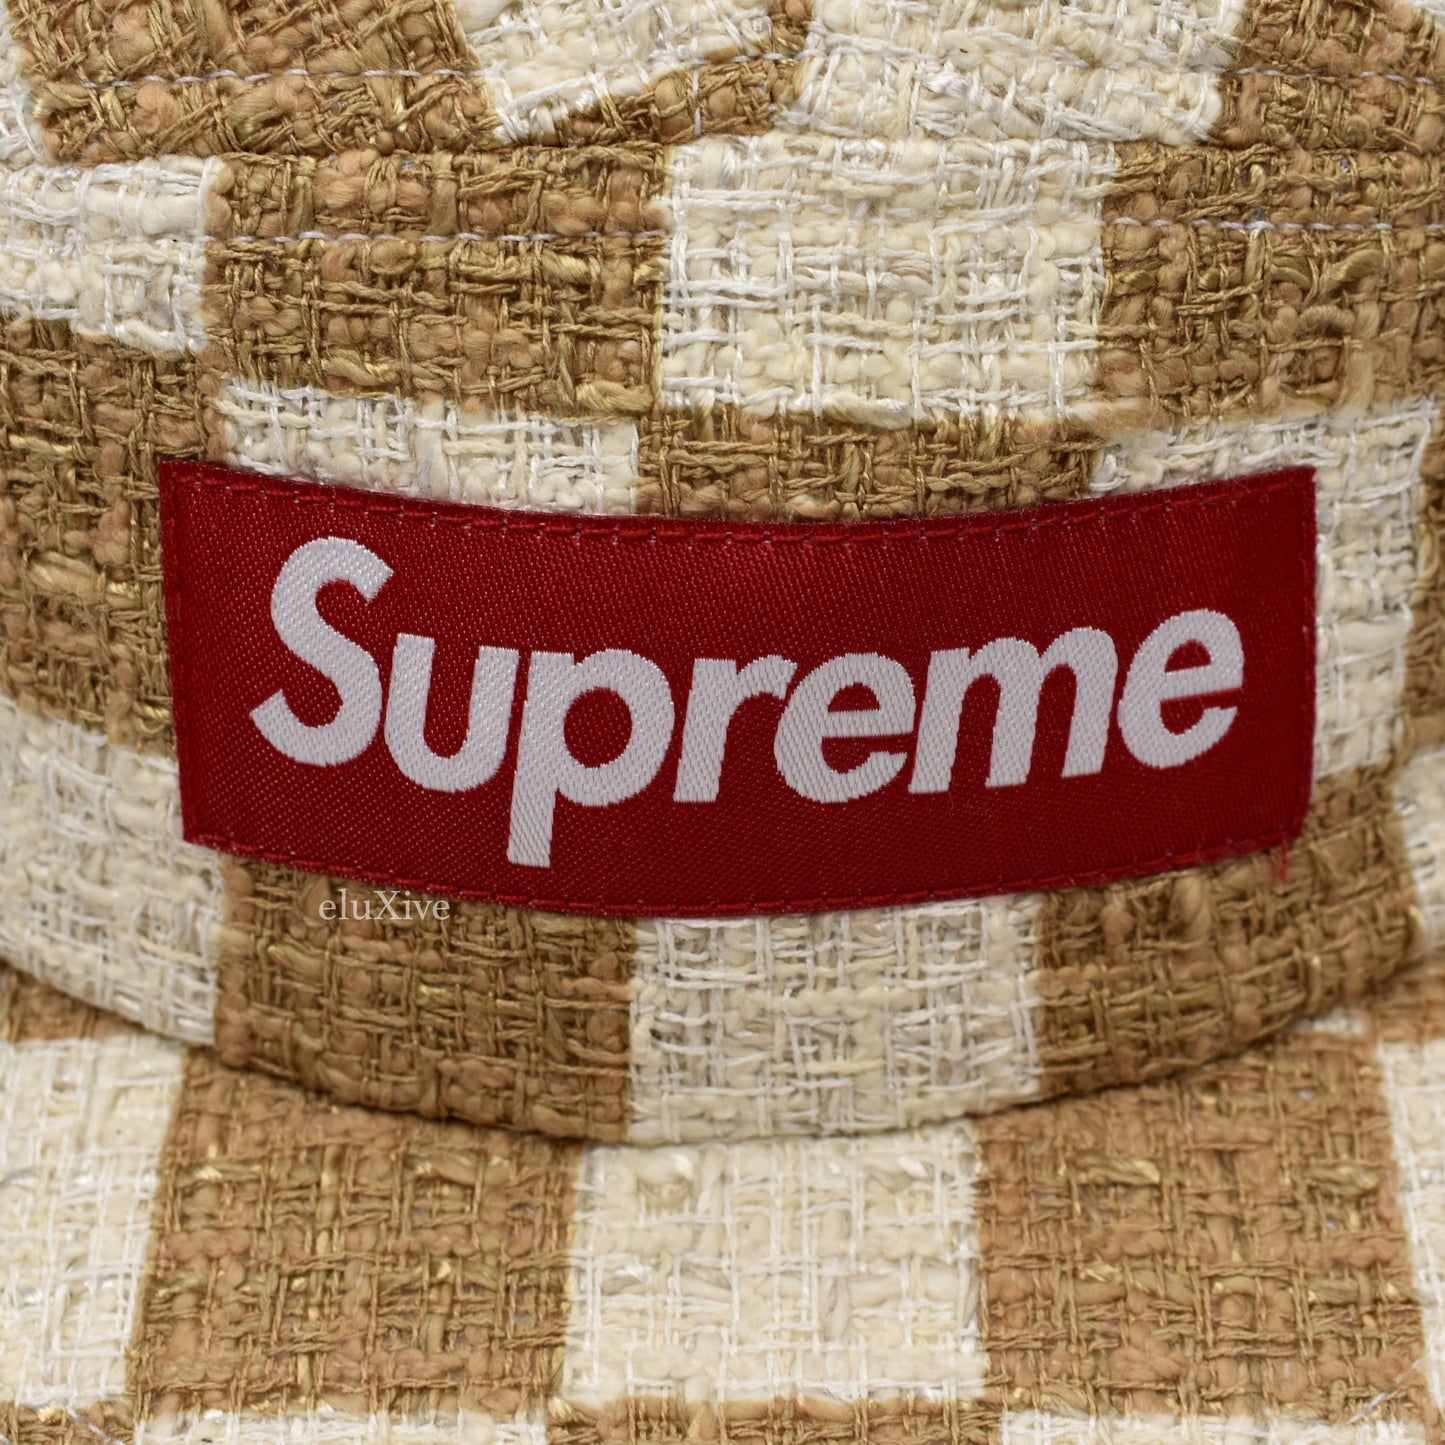 Supreme - Box Logo Tan Checkerboard Boucle Hat